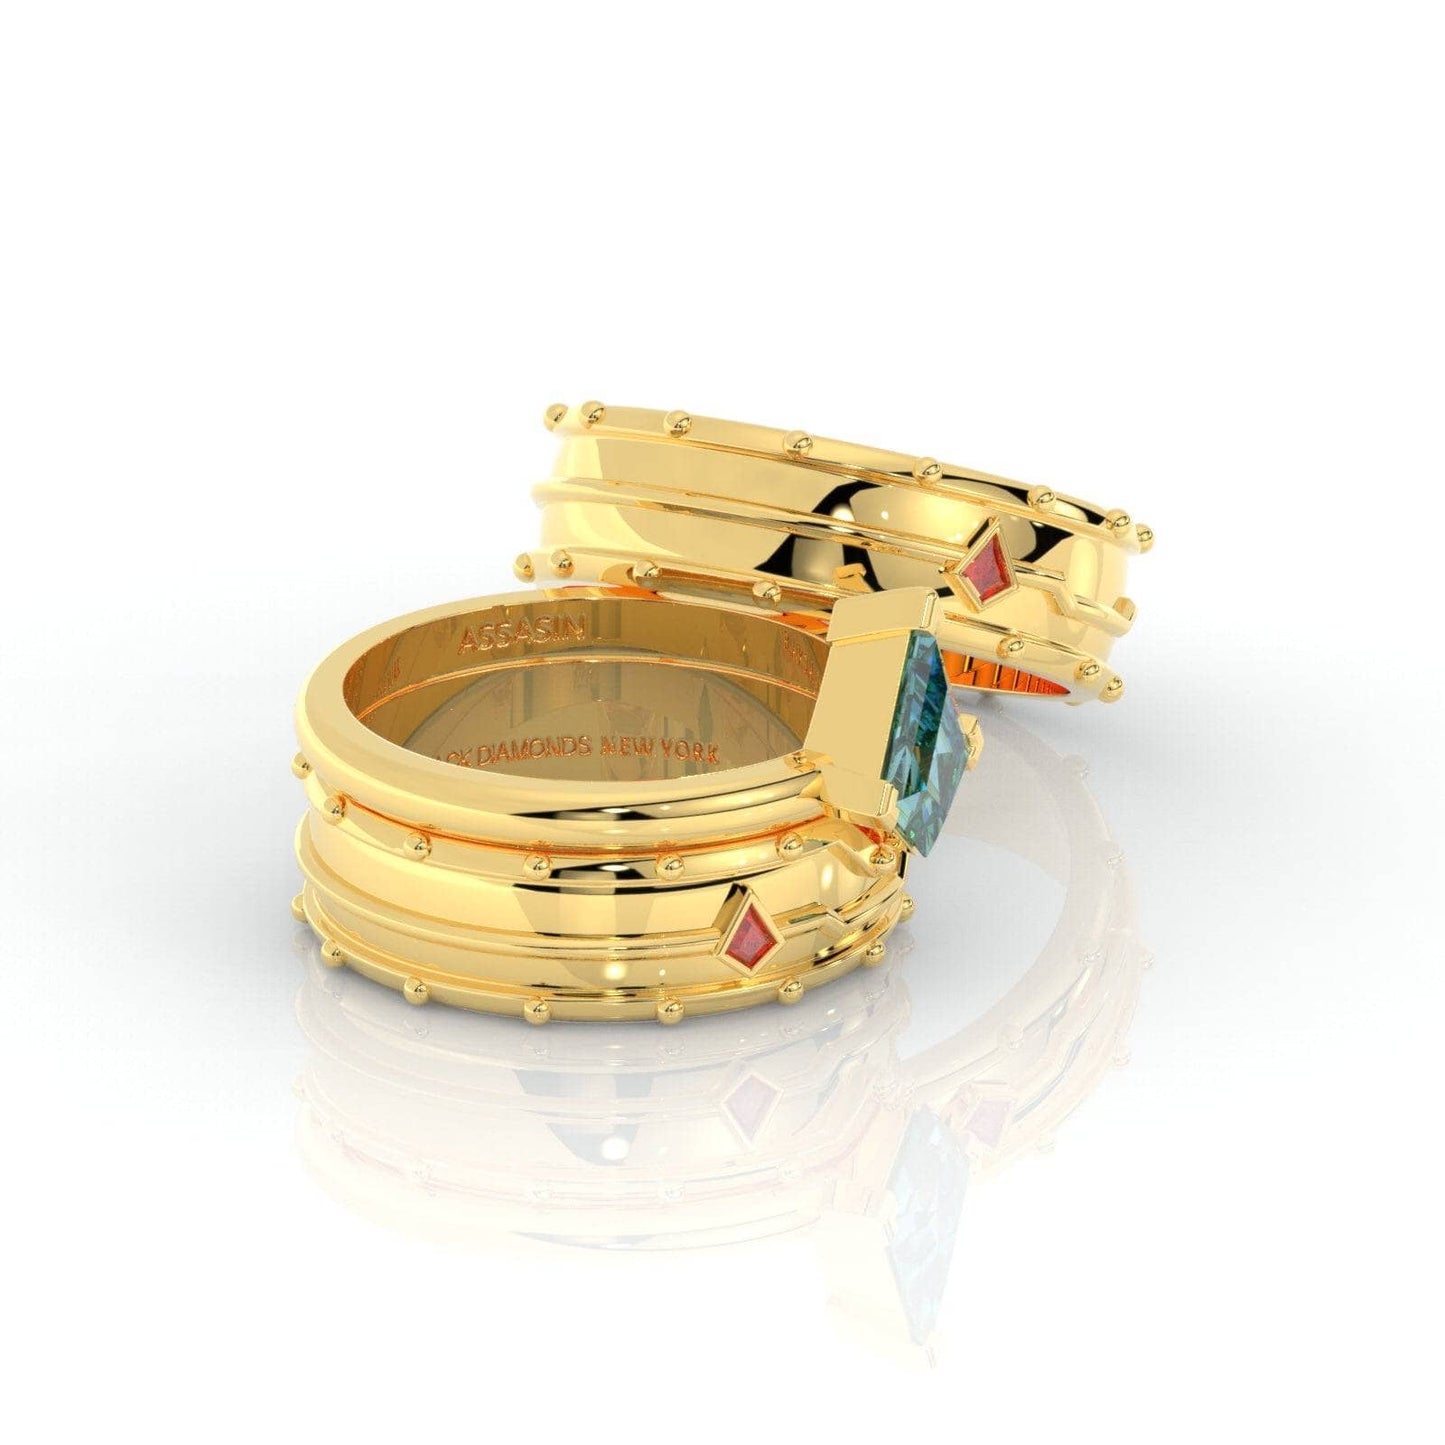 Assasin's Promise Ring Set (Women)- 14k Yellow Gold Video Game Inspired Rings-Black Diamonds New York